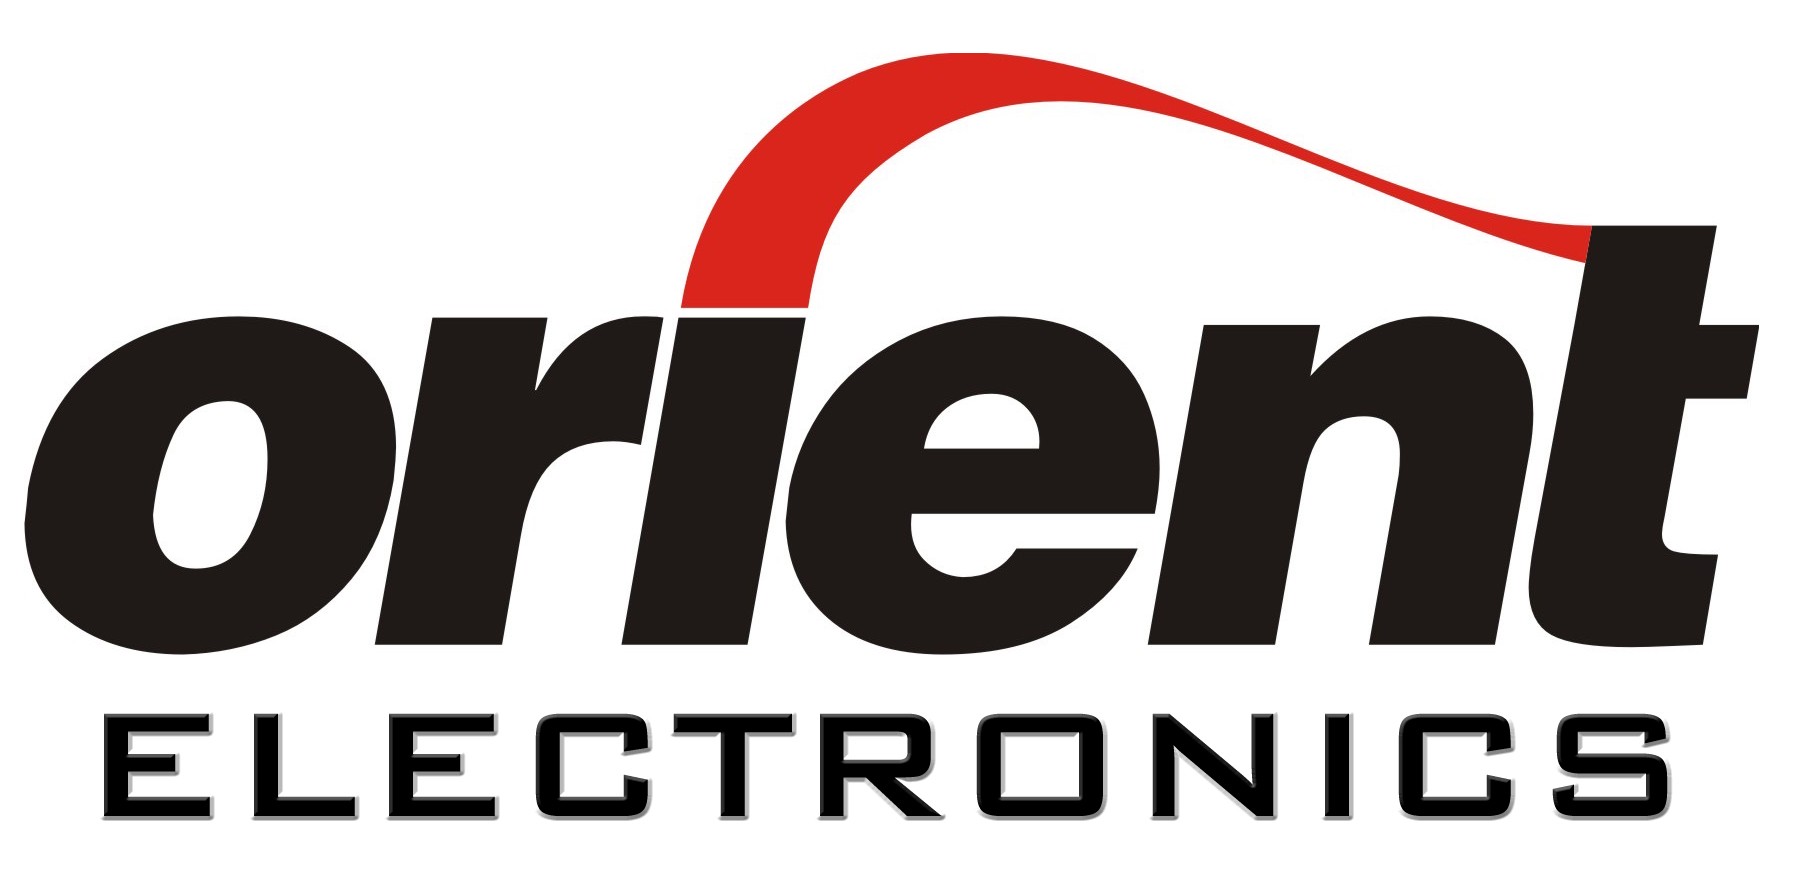 Orient Electronics